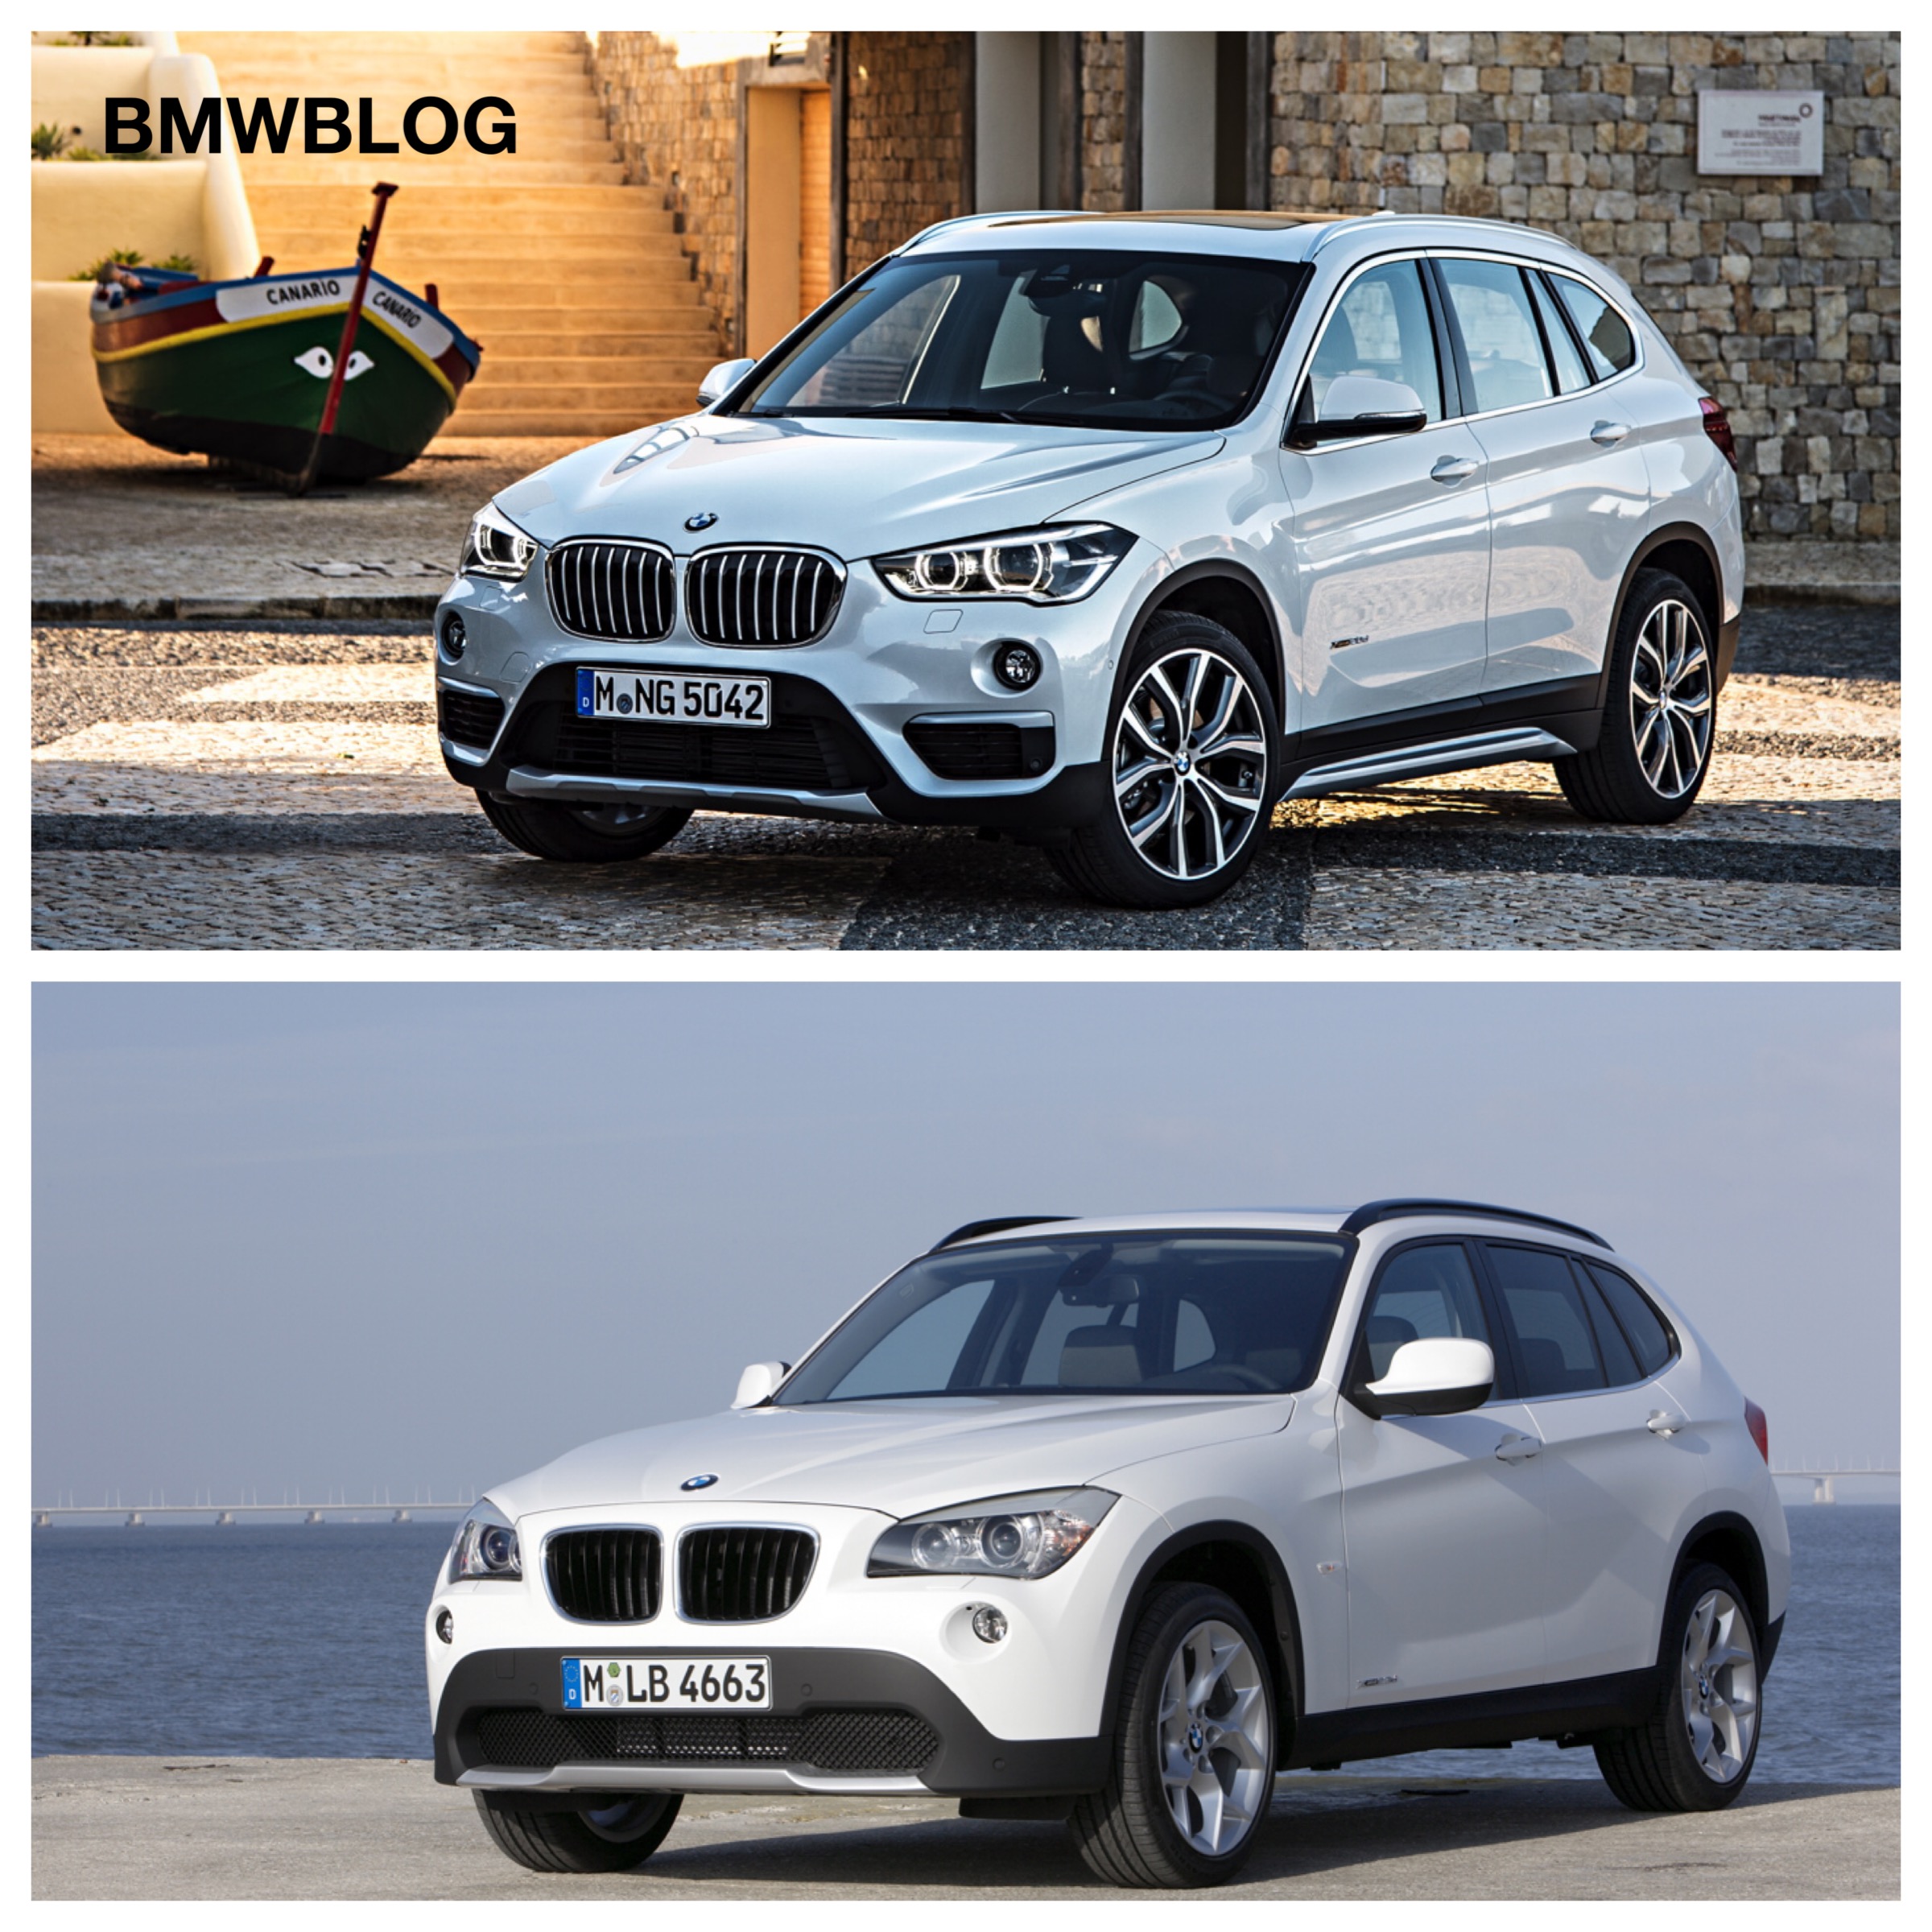 E84 BMW X1 vs. 2016 BMW X1 F48 - Photo Comparison